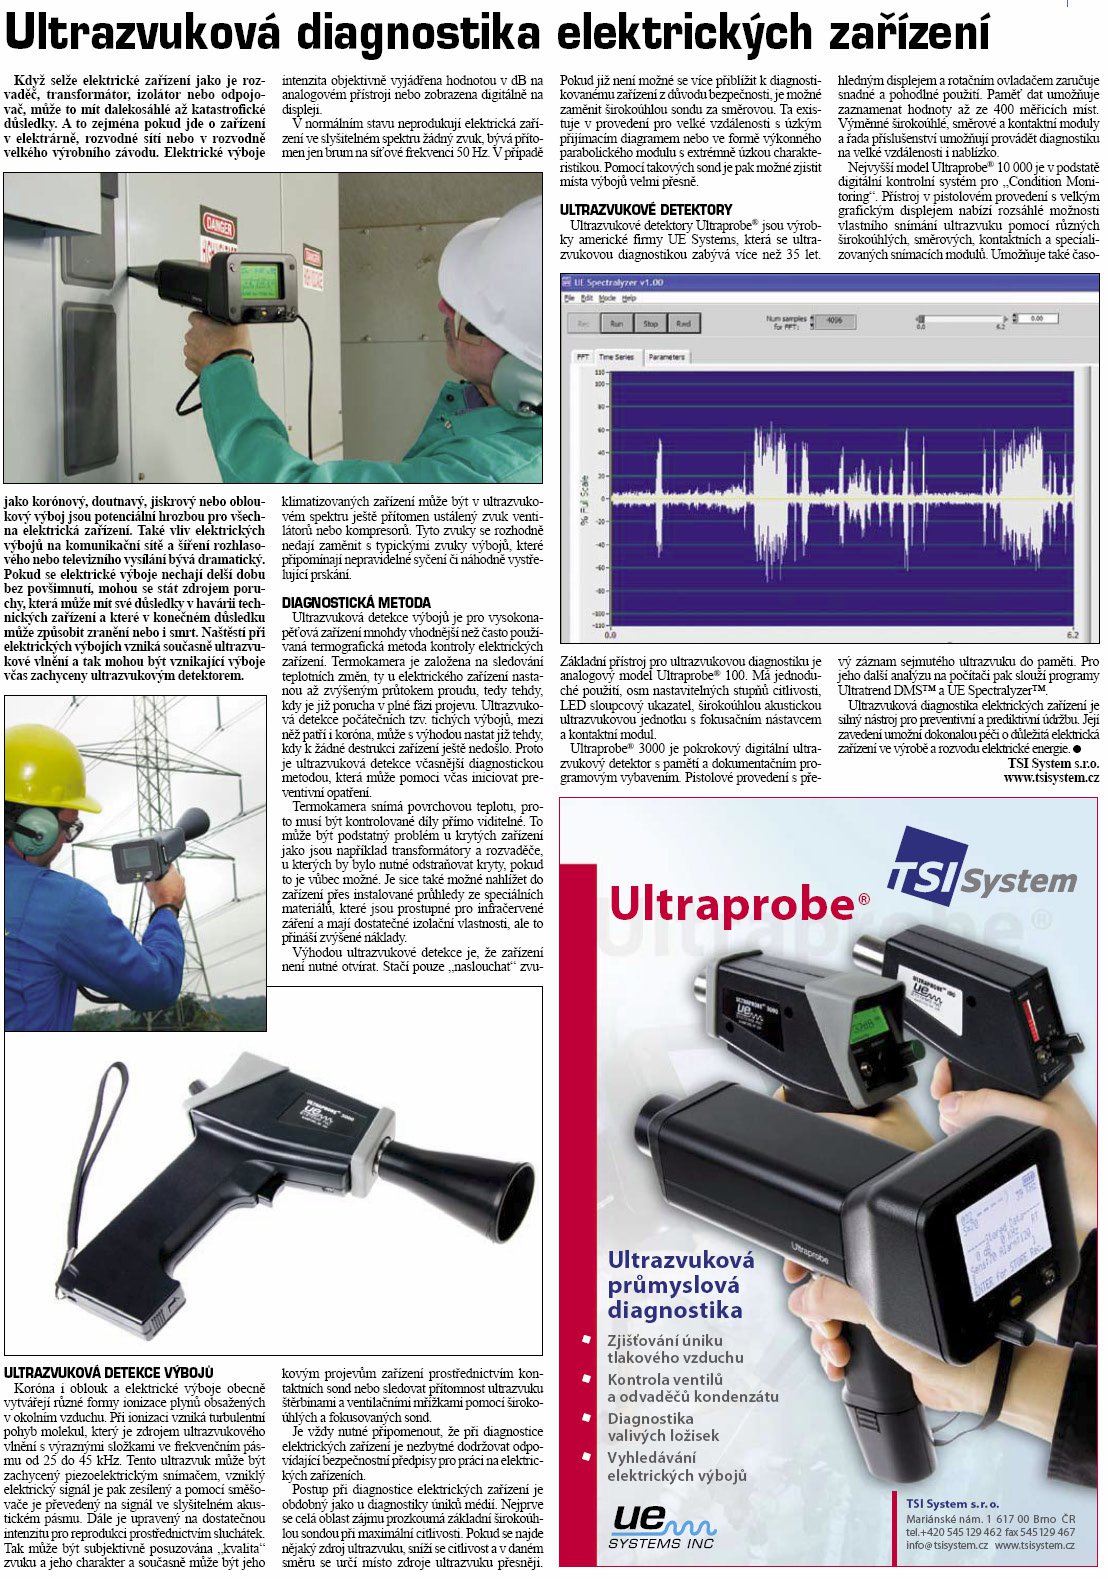 Článek Ultrazvuková diagnostika elektrických zařízení, Technický týdeník, č.25 2009